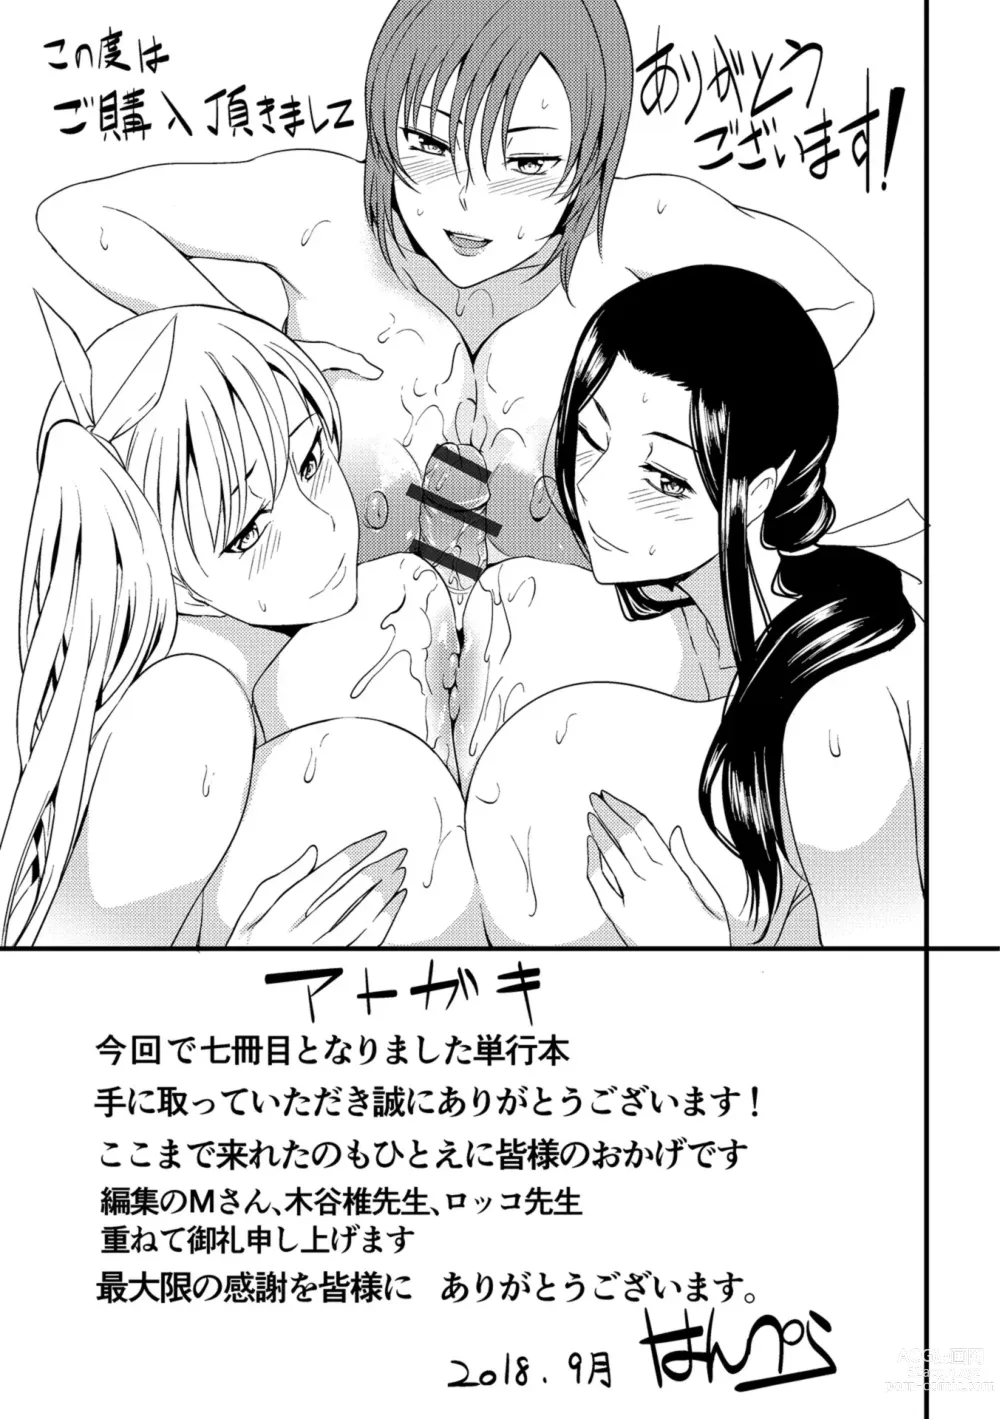 Page 197 of manga Oku-san ga Shiranai Kairaku